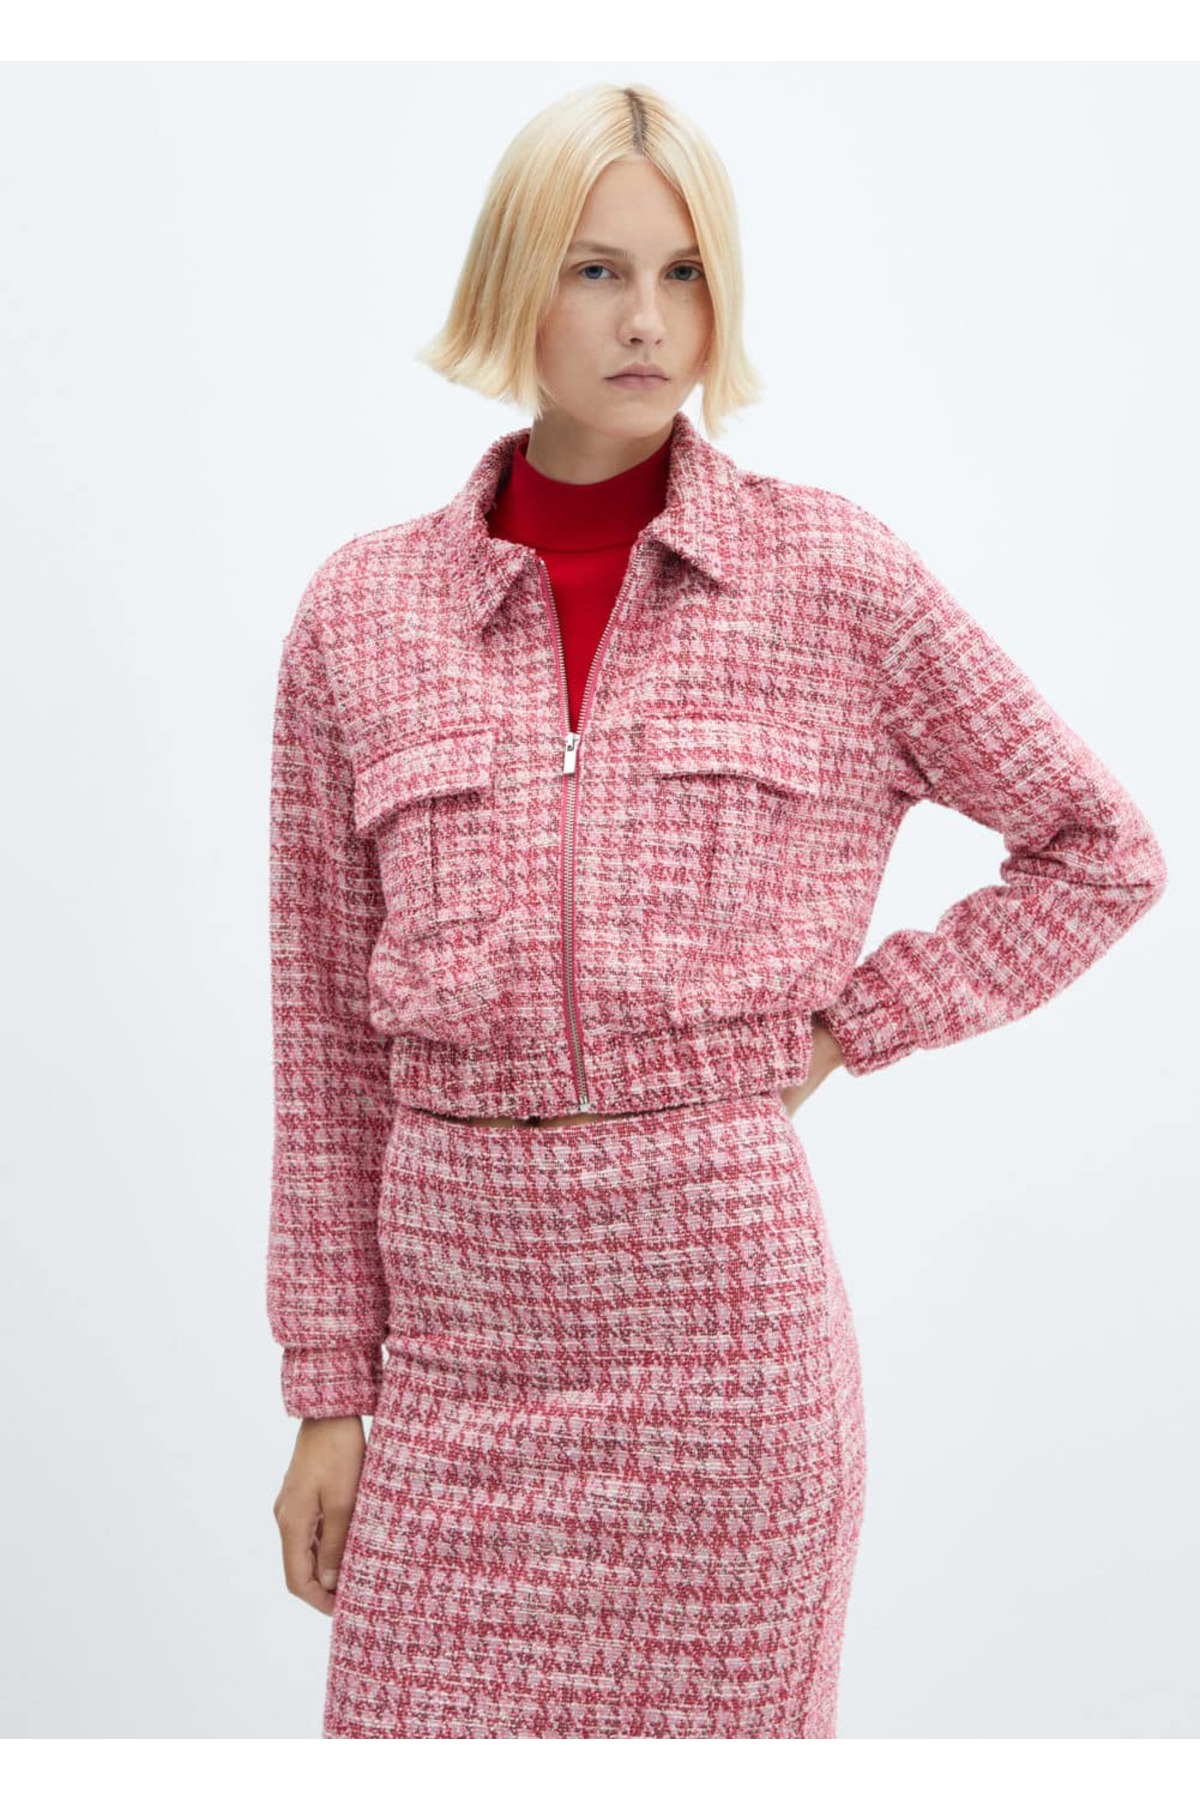 Твидовый пиджак с узором «гусиные лапки» Mango, розовый женский твидовый блейзер в стиле гусиные лапки